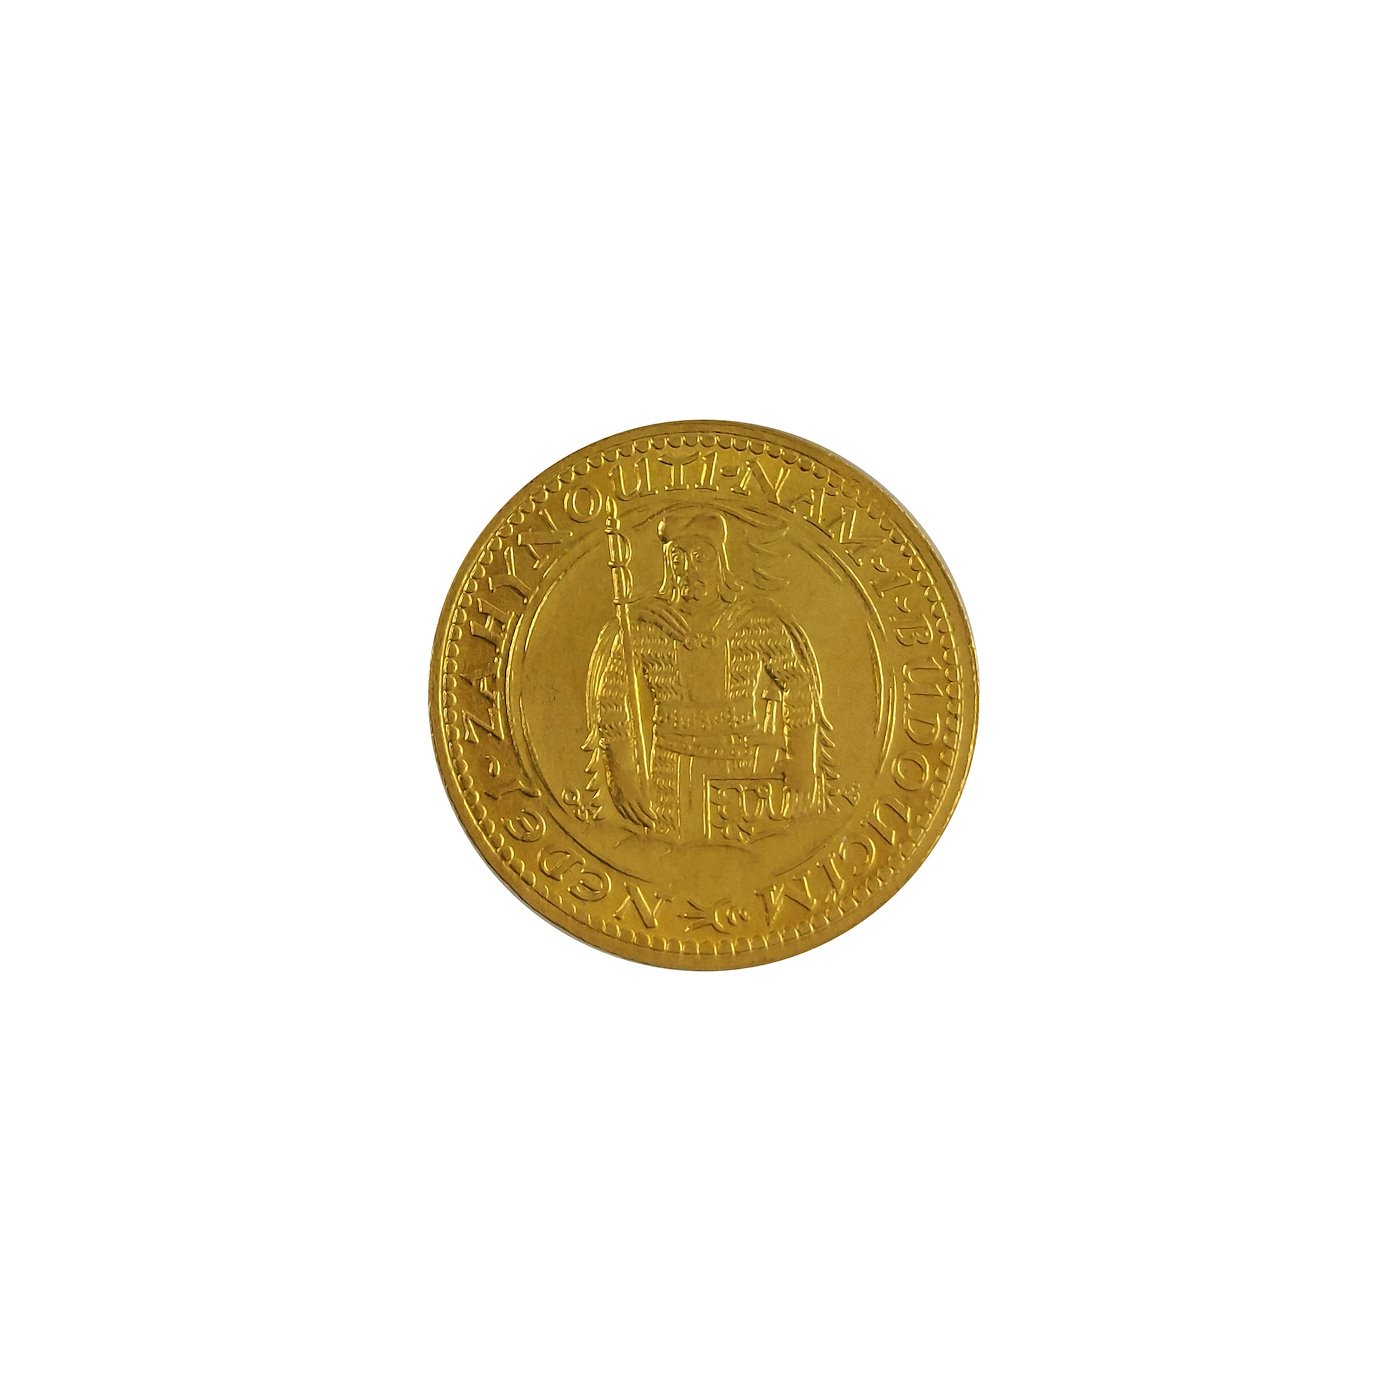 Zlatá mince - Československá republika Svatováclavský dukát 1924 , zlato 986/1000, hrubá hmotnost mince 3,49 g